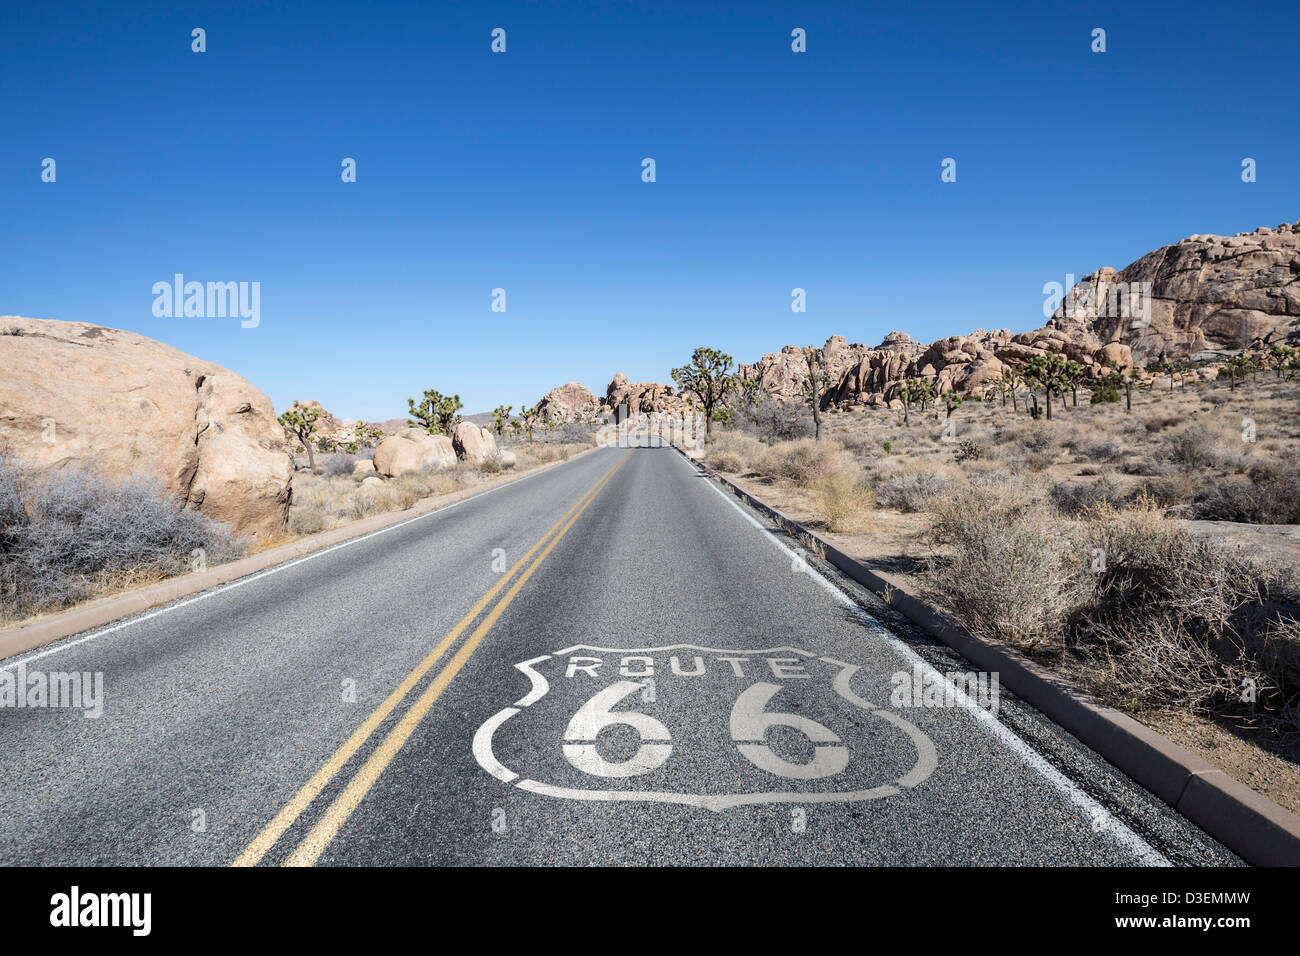 La route de Joshua tree avec Route 66 pavement sign dans le désert de Mojave en Californie. Banque D'Images